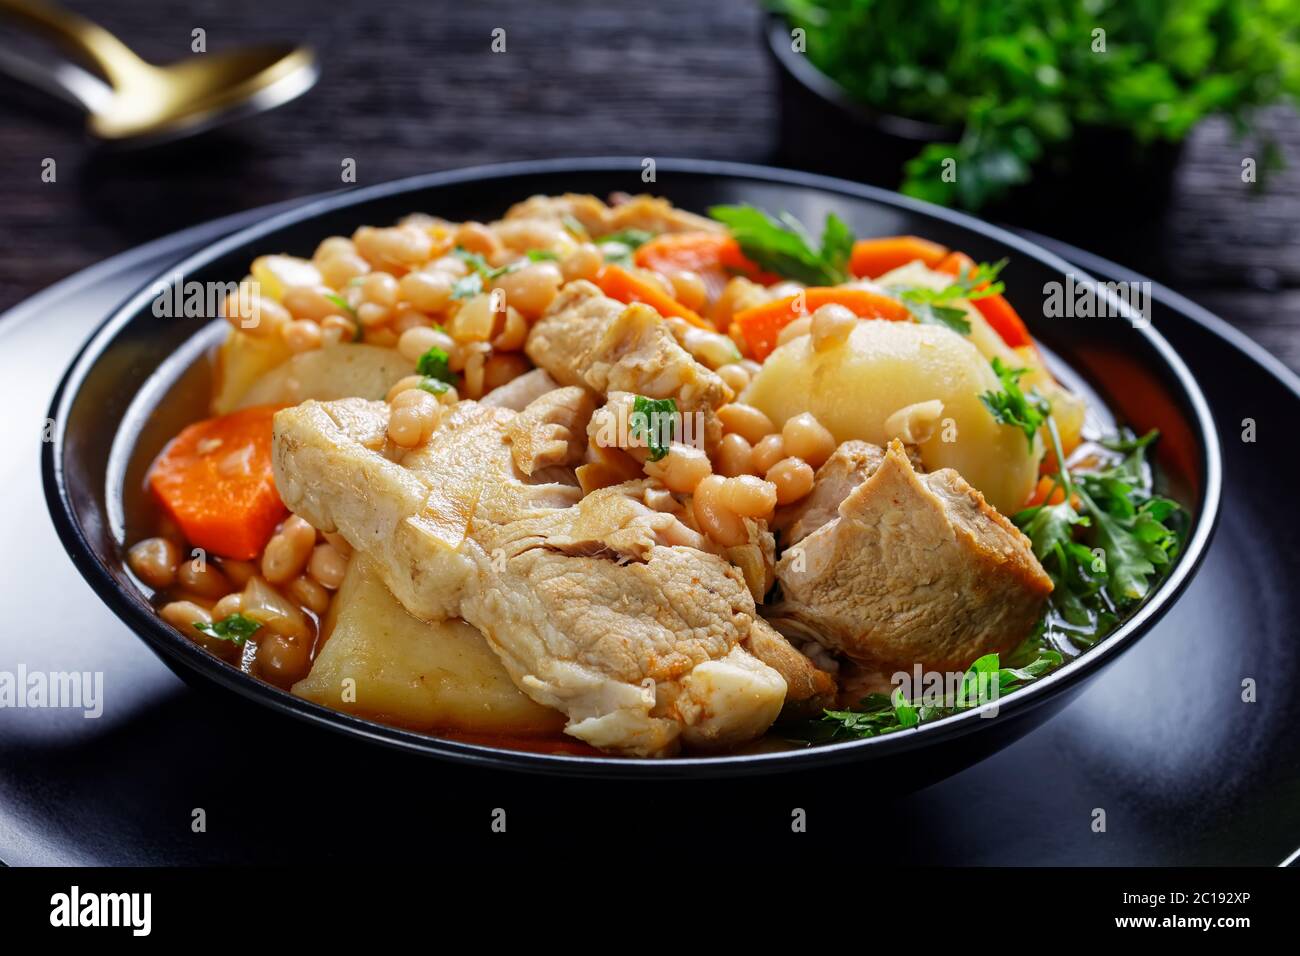 gros plan d'une portion de haricots blancs, de légumes et de steak de porc ragoût dans un bol noir sur une table en bois sombre Banque D'Images